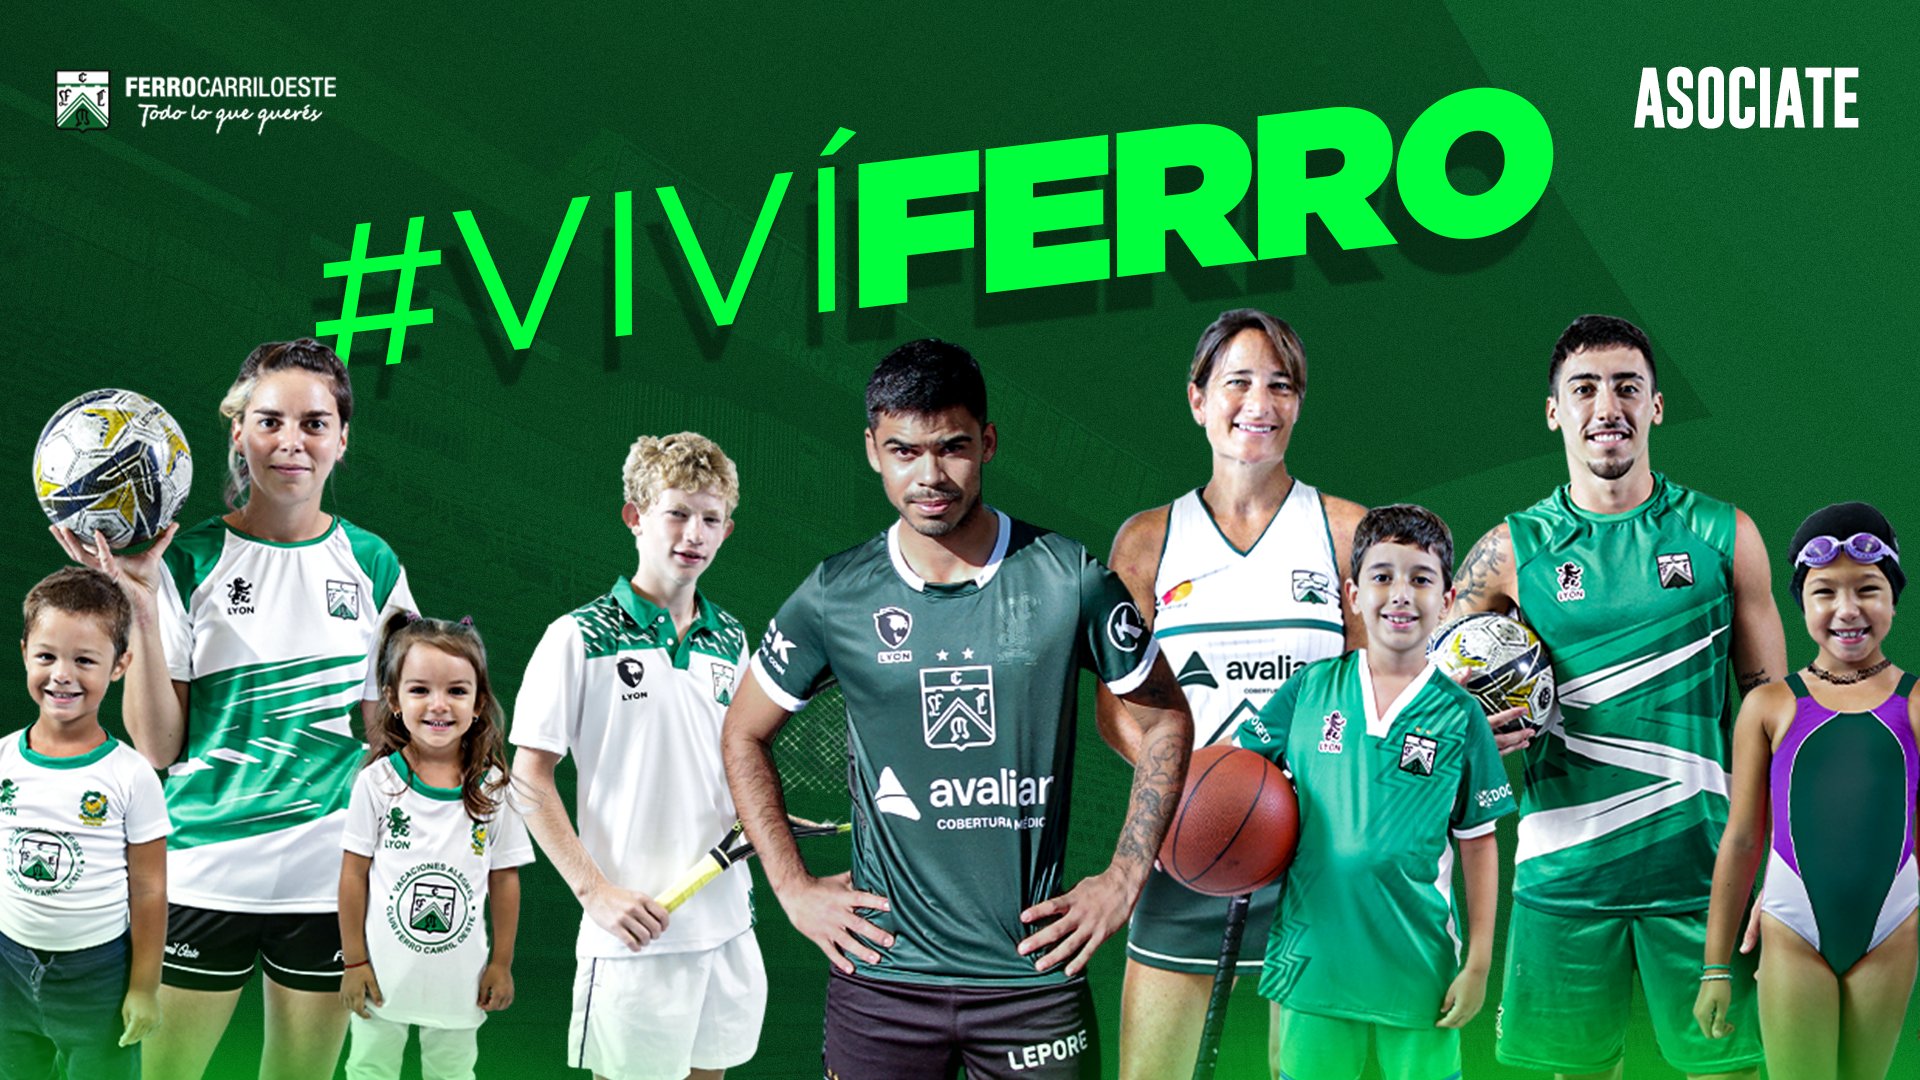 Ferro lanzó nueva campaña de socios - Marca de Gol